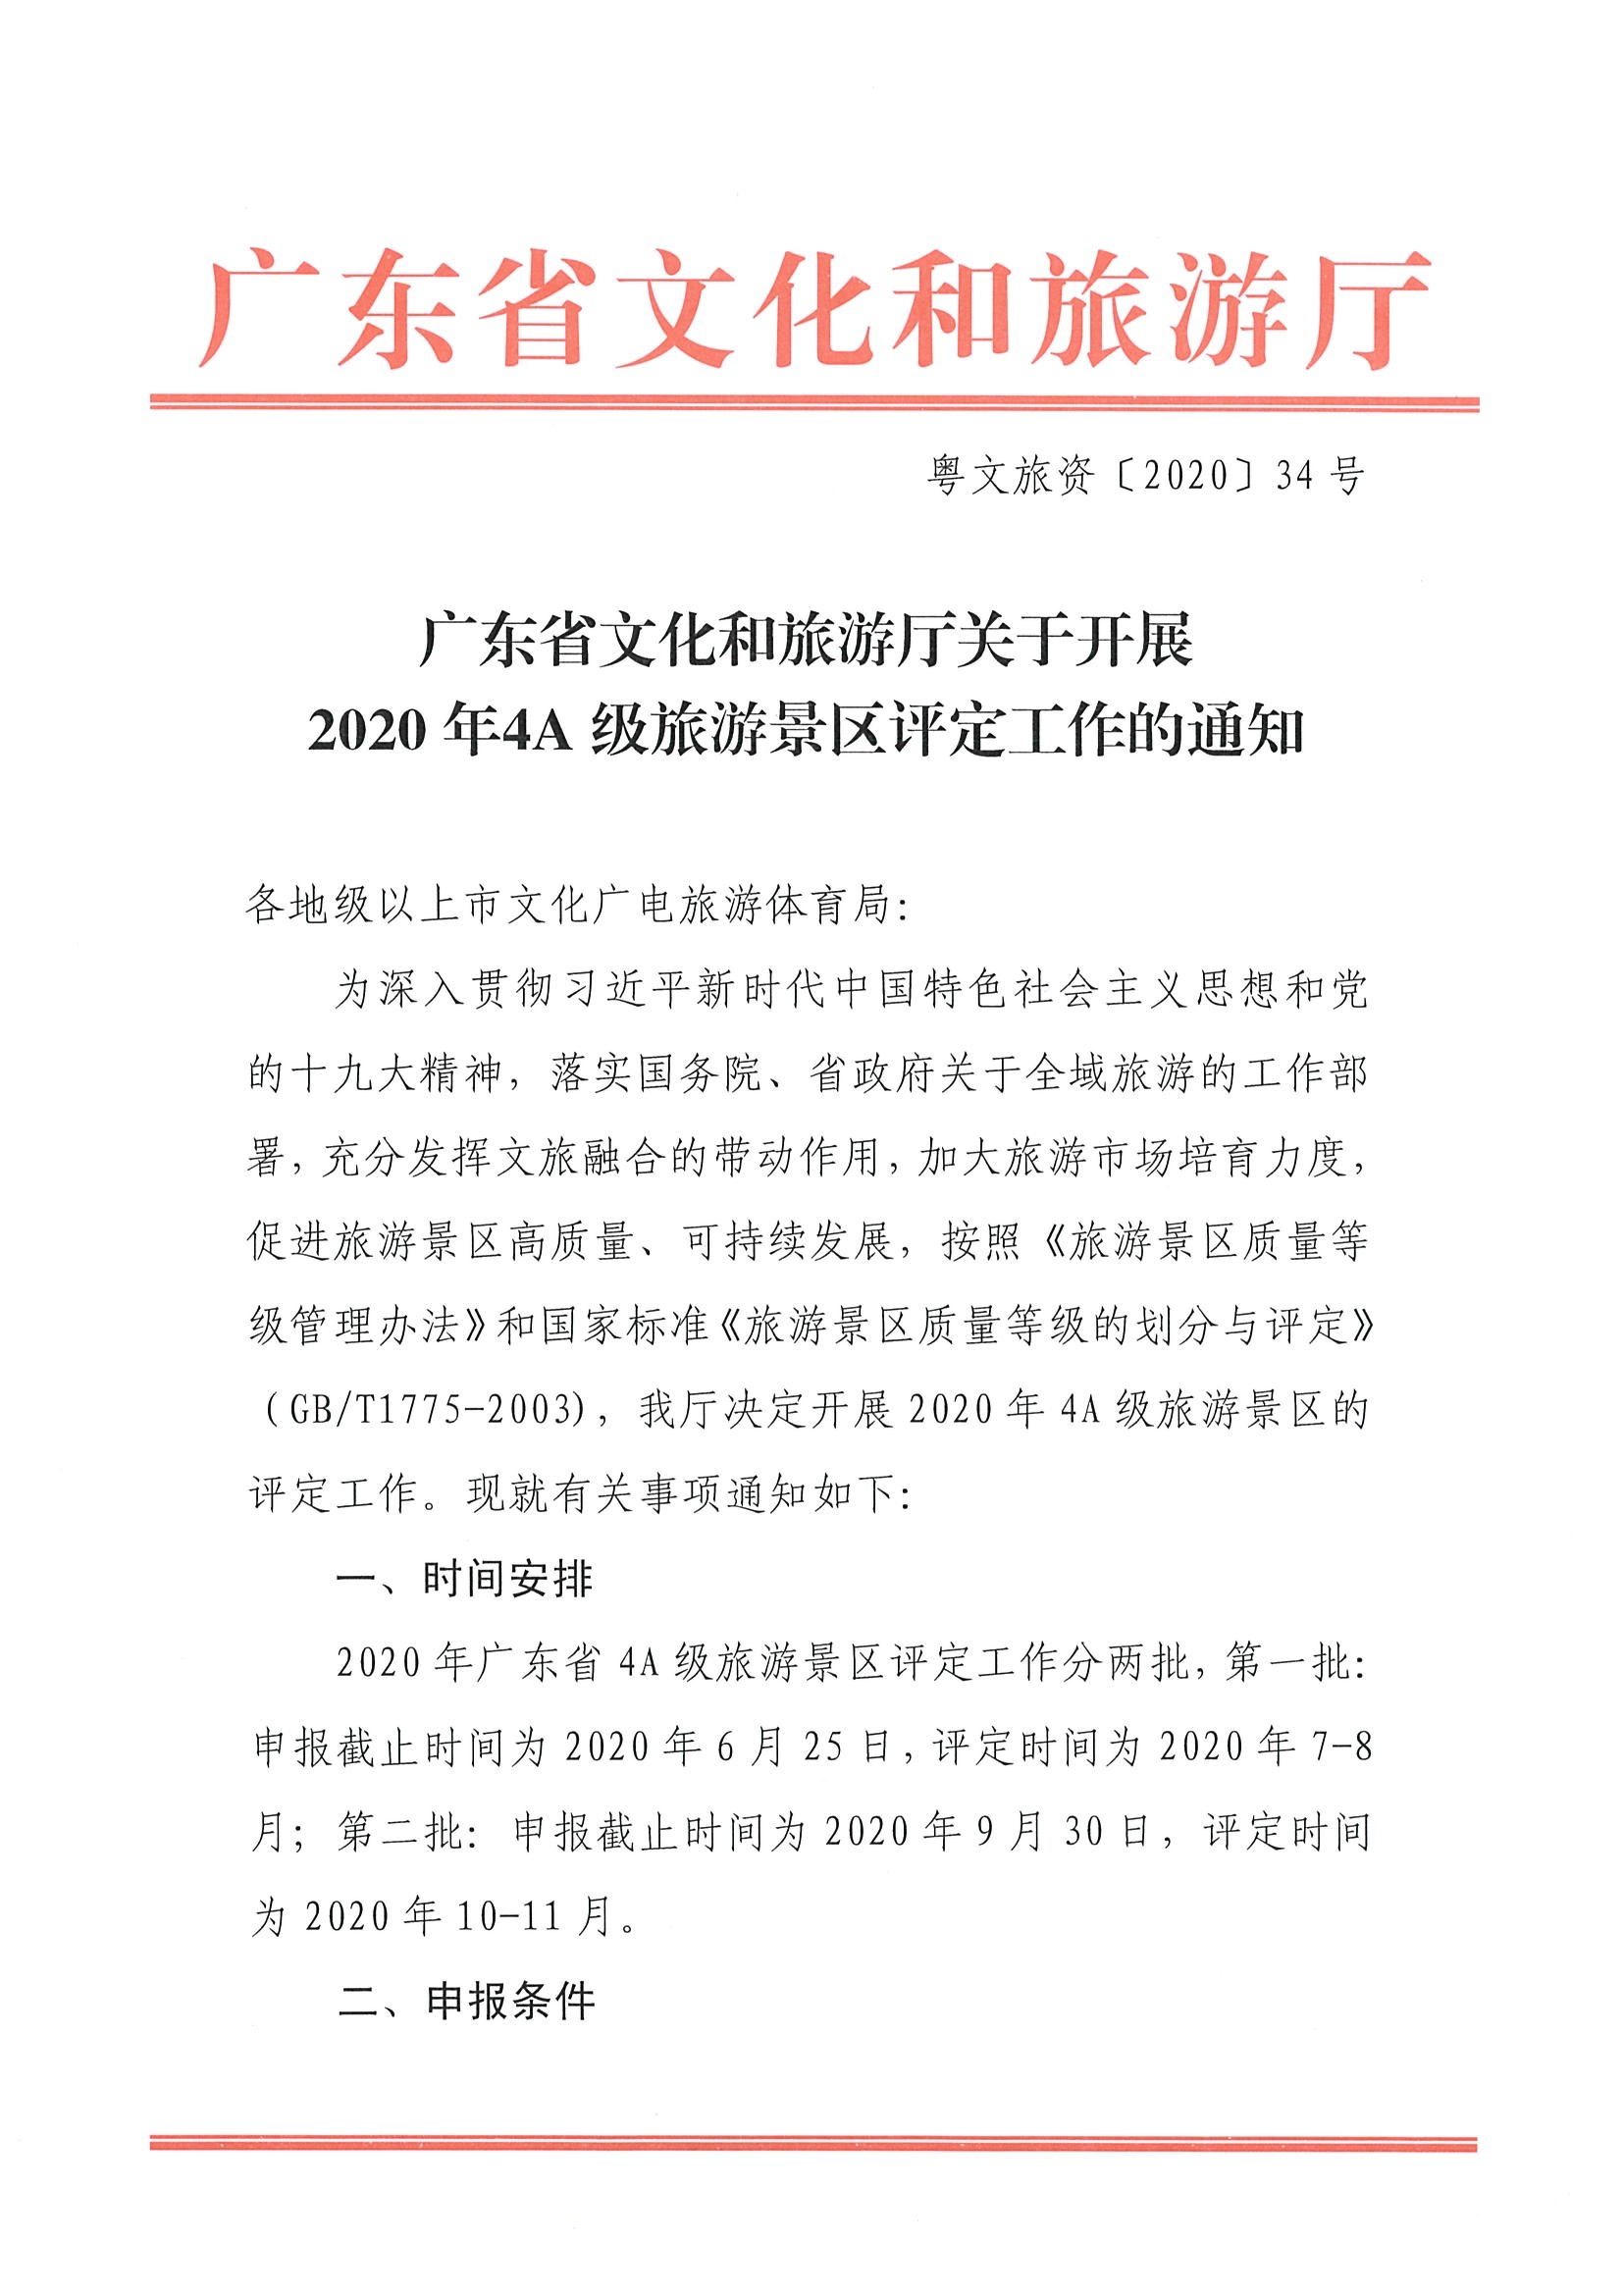 广东省文化和旅游厅关于开展2020年4A级旅游景区评定工作的通知_页面_1.jpg